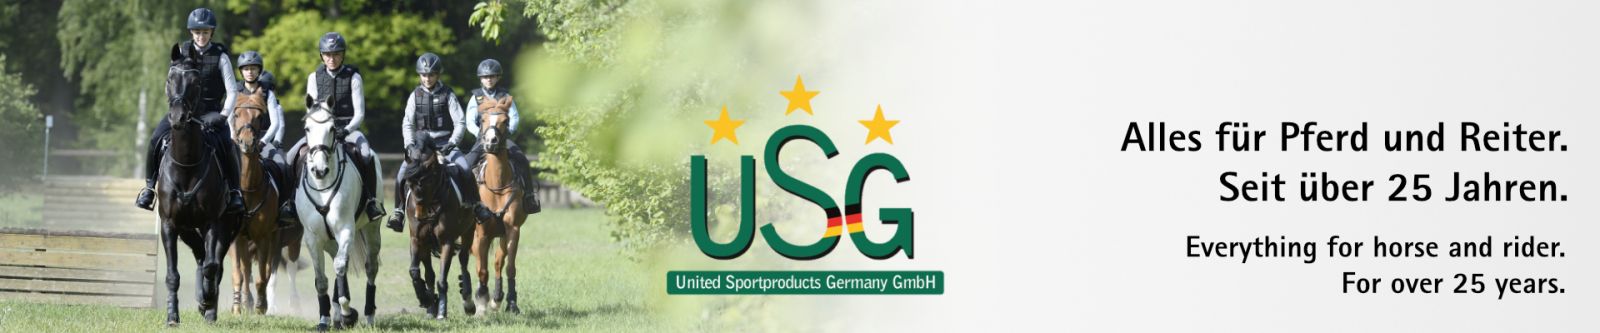 Nachhaltigkeit - USG - United Sportproducts Germany GmbH